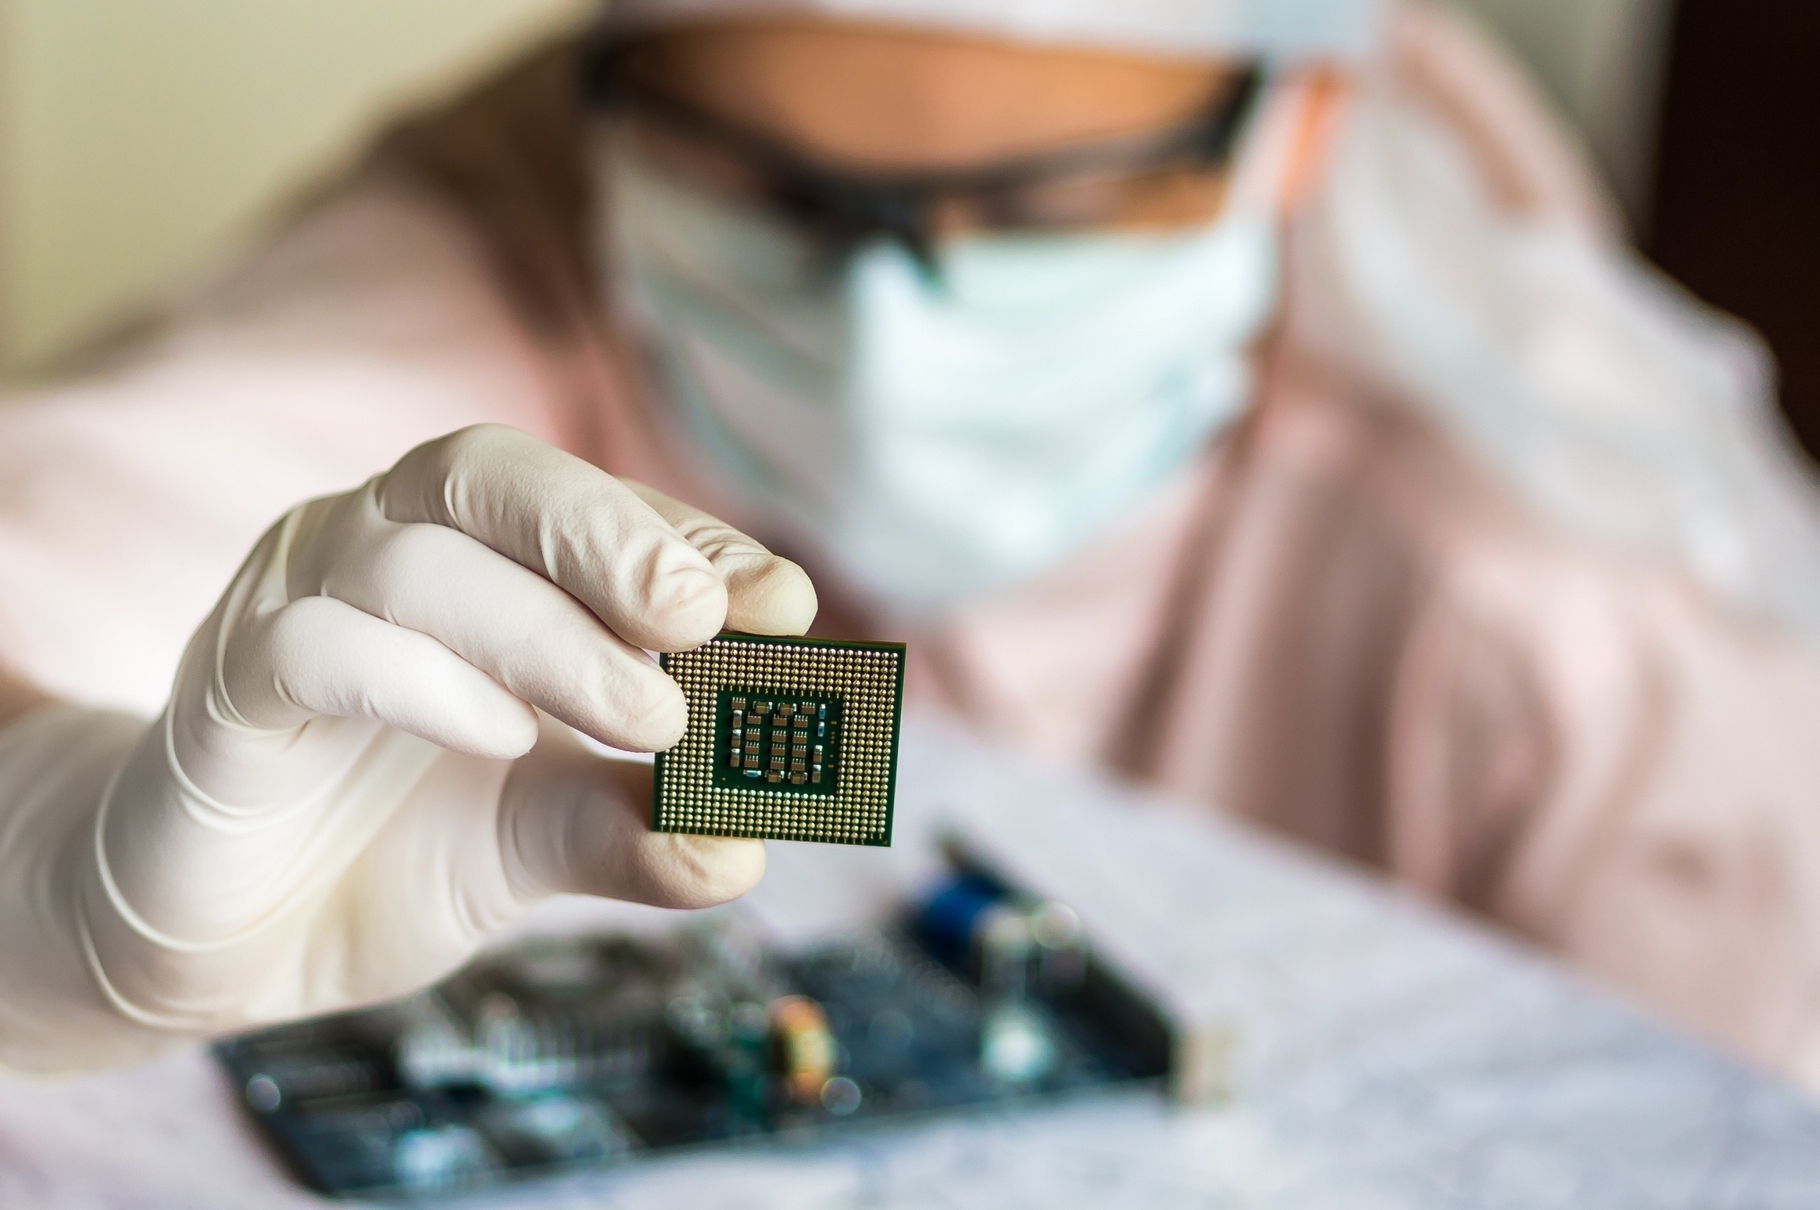 Le processeur de Singular Chip pourrait trouver une utilité dans les applications d’intelligence artificielle chargées d’appréhender le réel. © Andriano.cz, Shutterstock